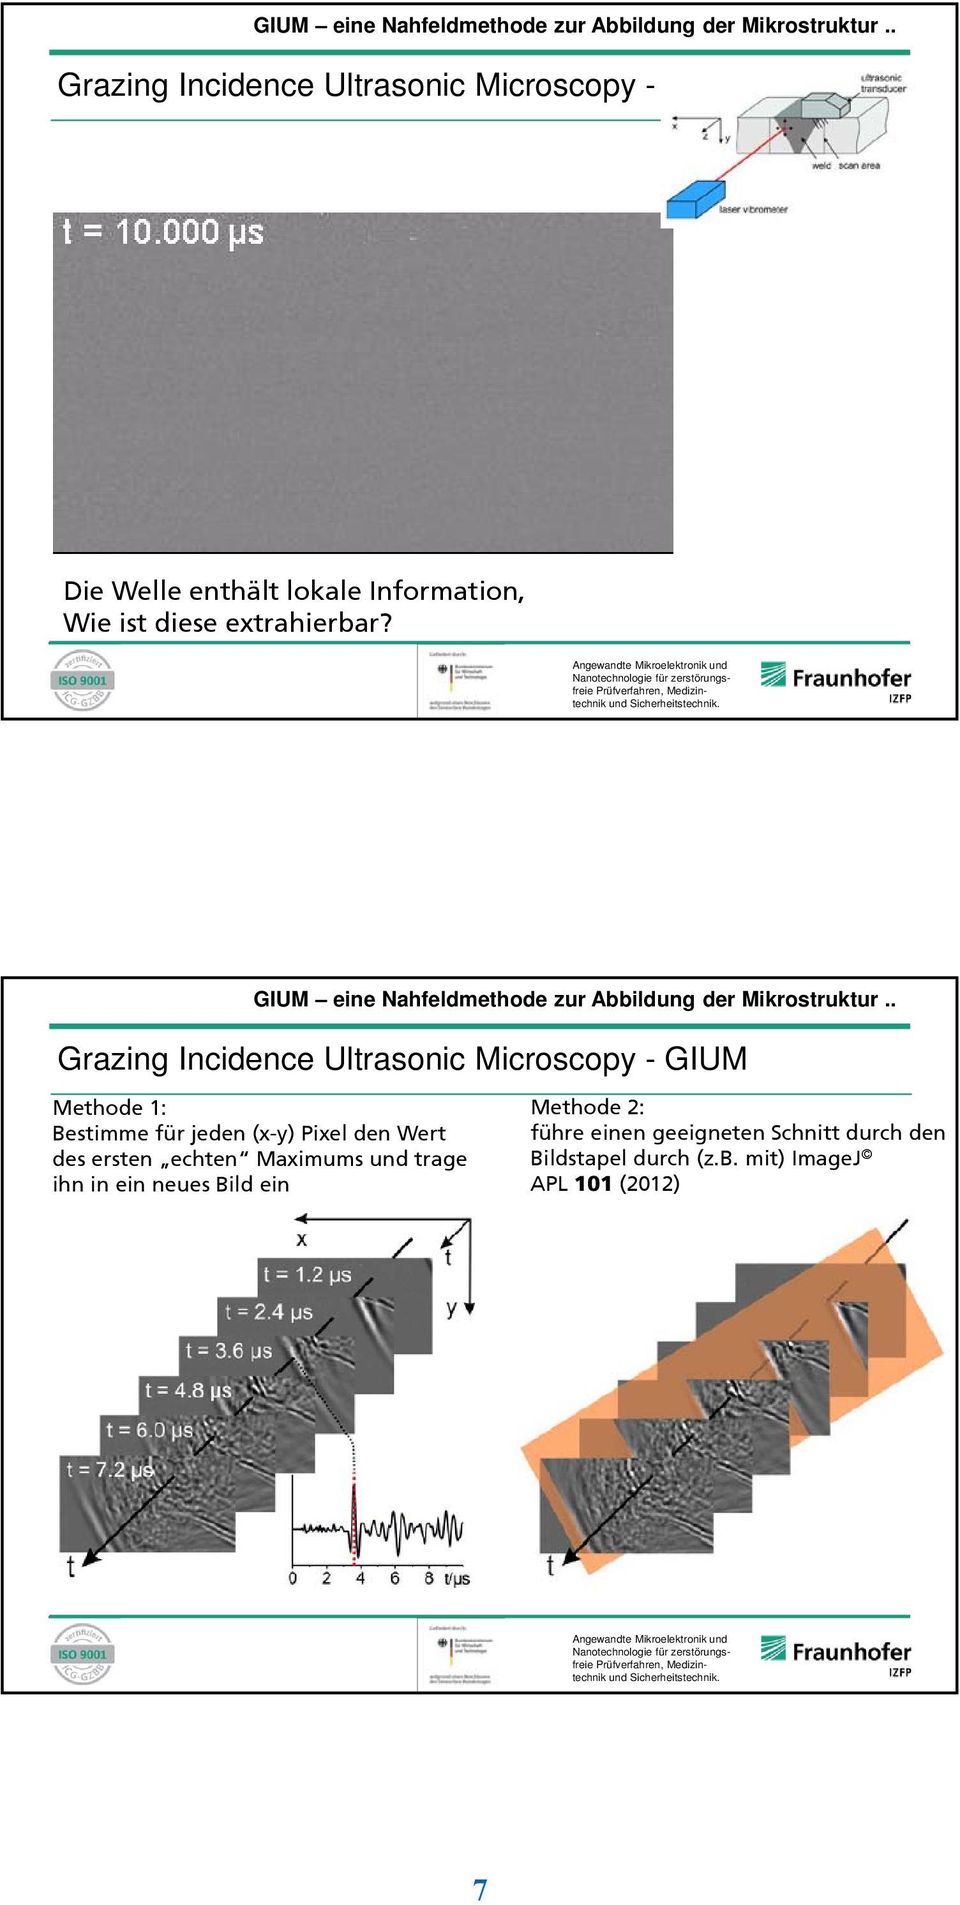 Grazing Incidence Ultrasonic Microscopy - GIUM Methode 1: Bestimme für jeden (x-y) Pixel den